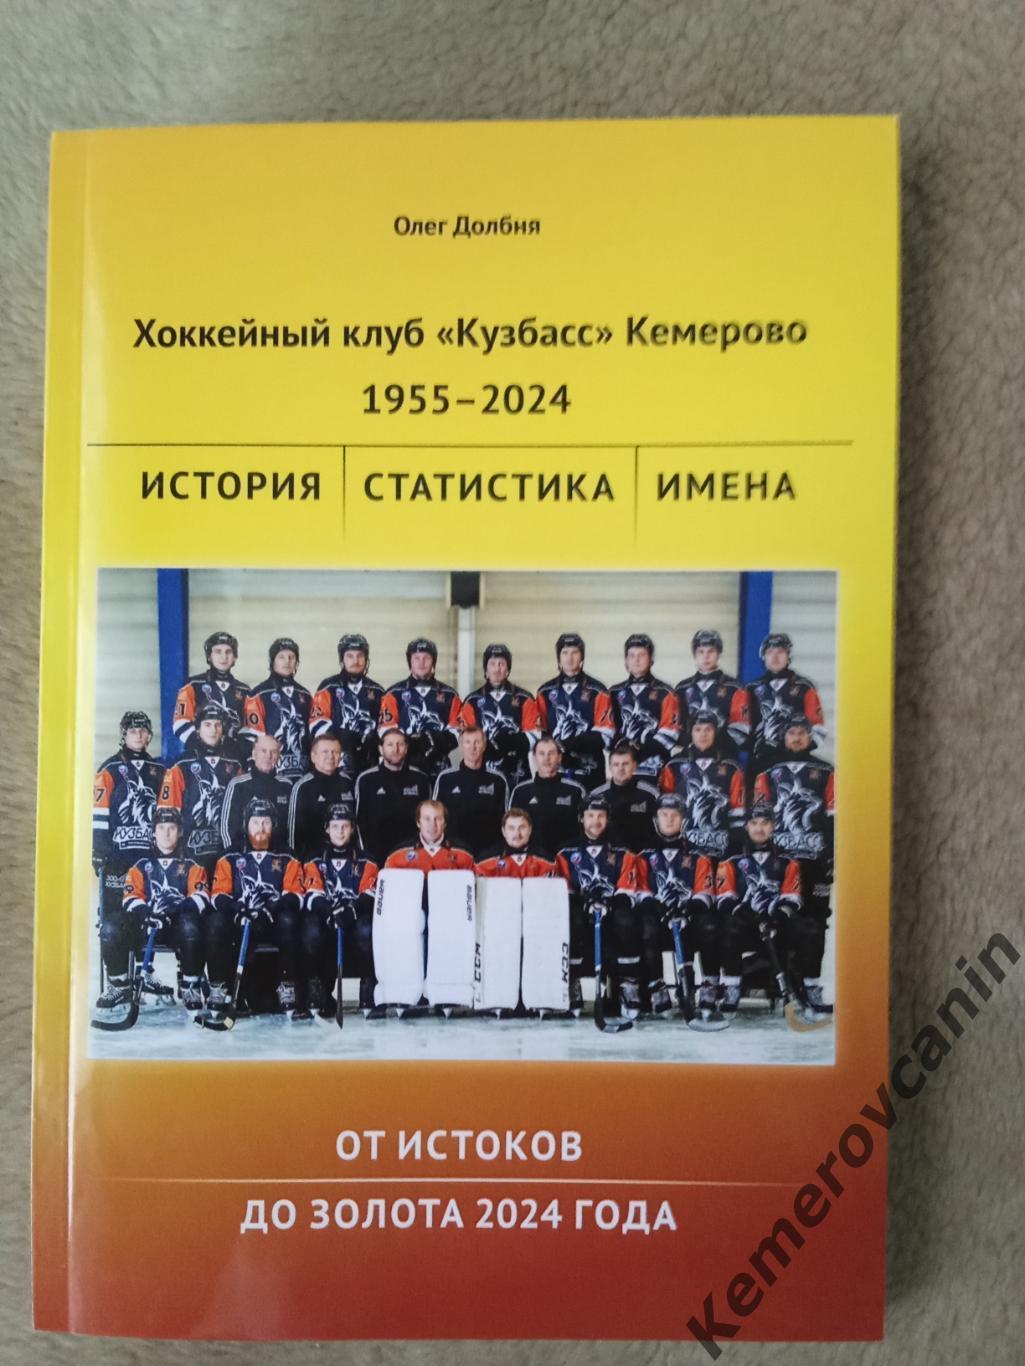 2024 Хоккейный клуб Кузбасс Кемерово 1955-2024. От истоков до золота 2024 года.